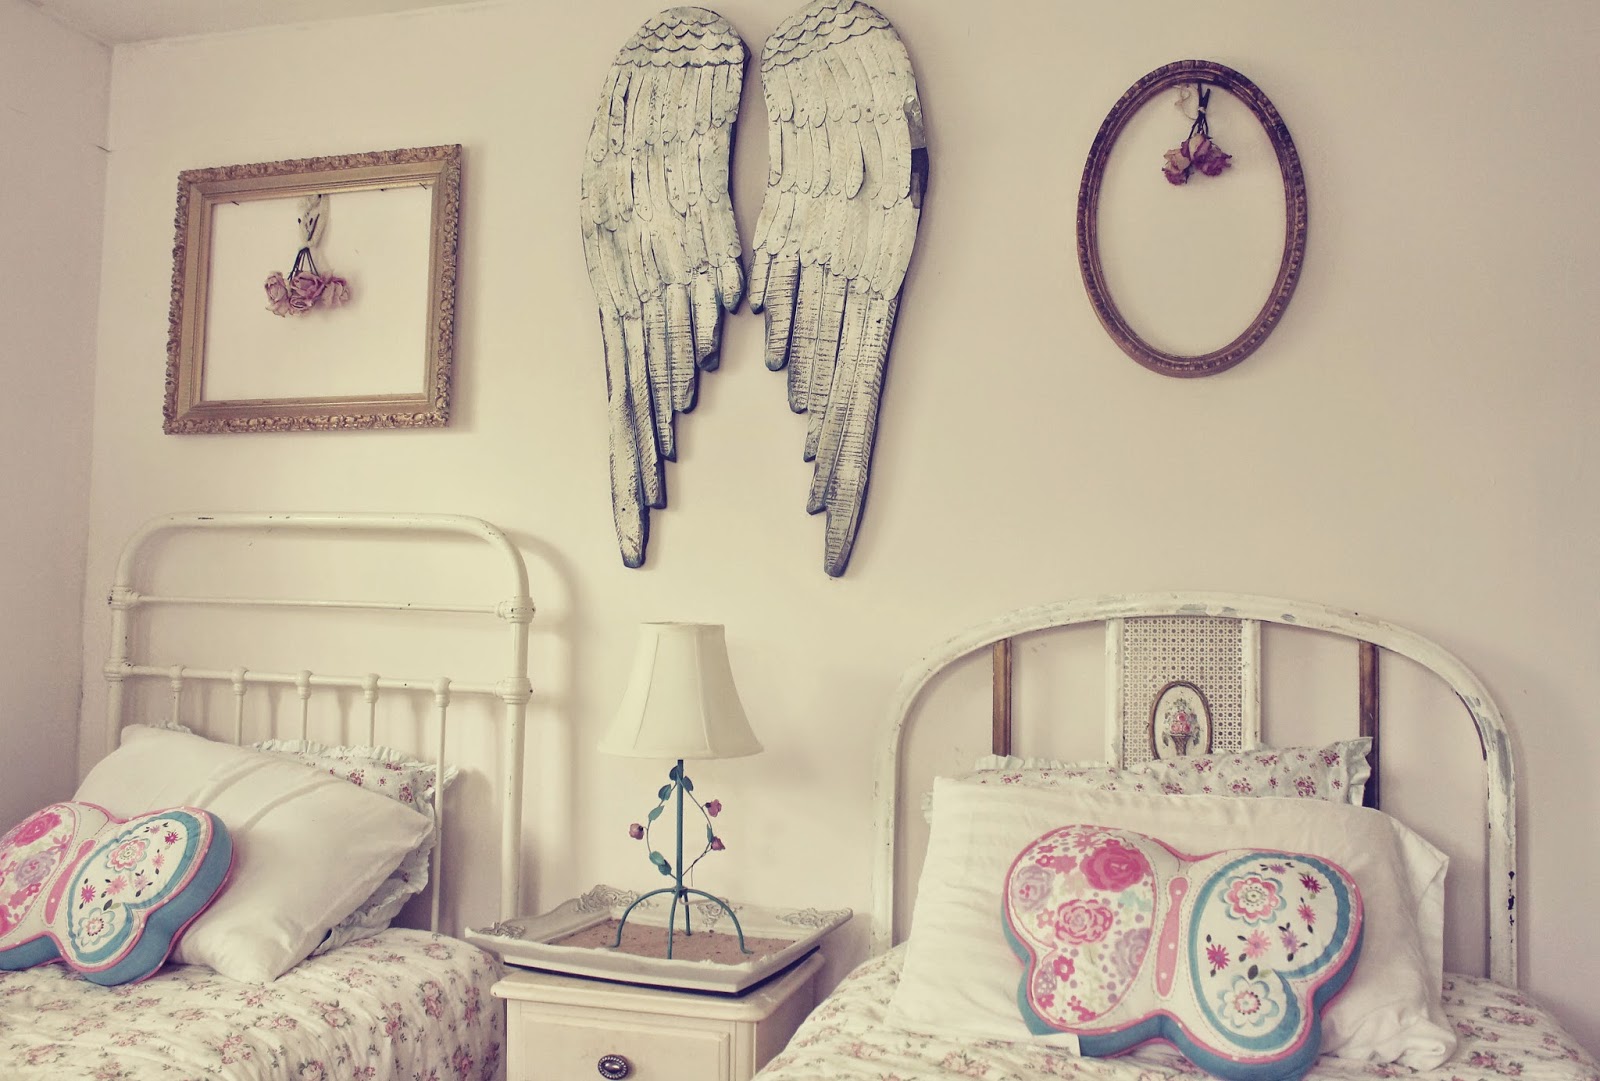 Dreamy bedroom designs 7.jpg